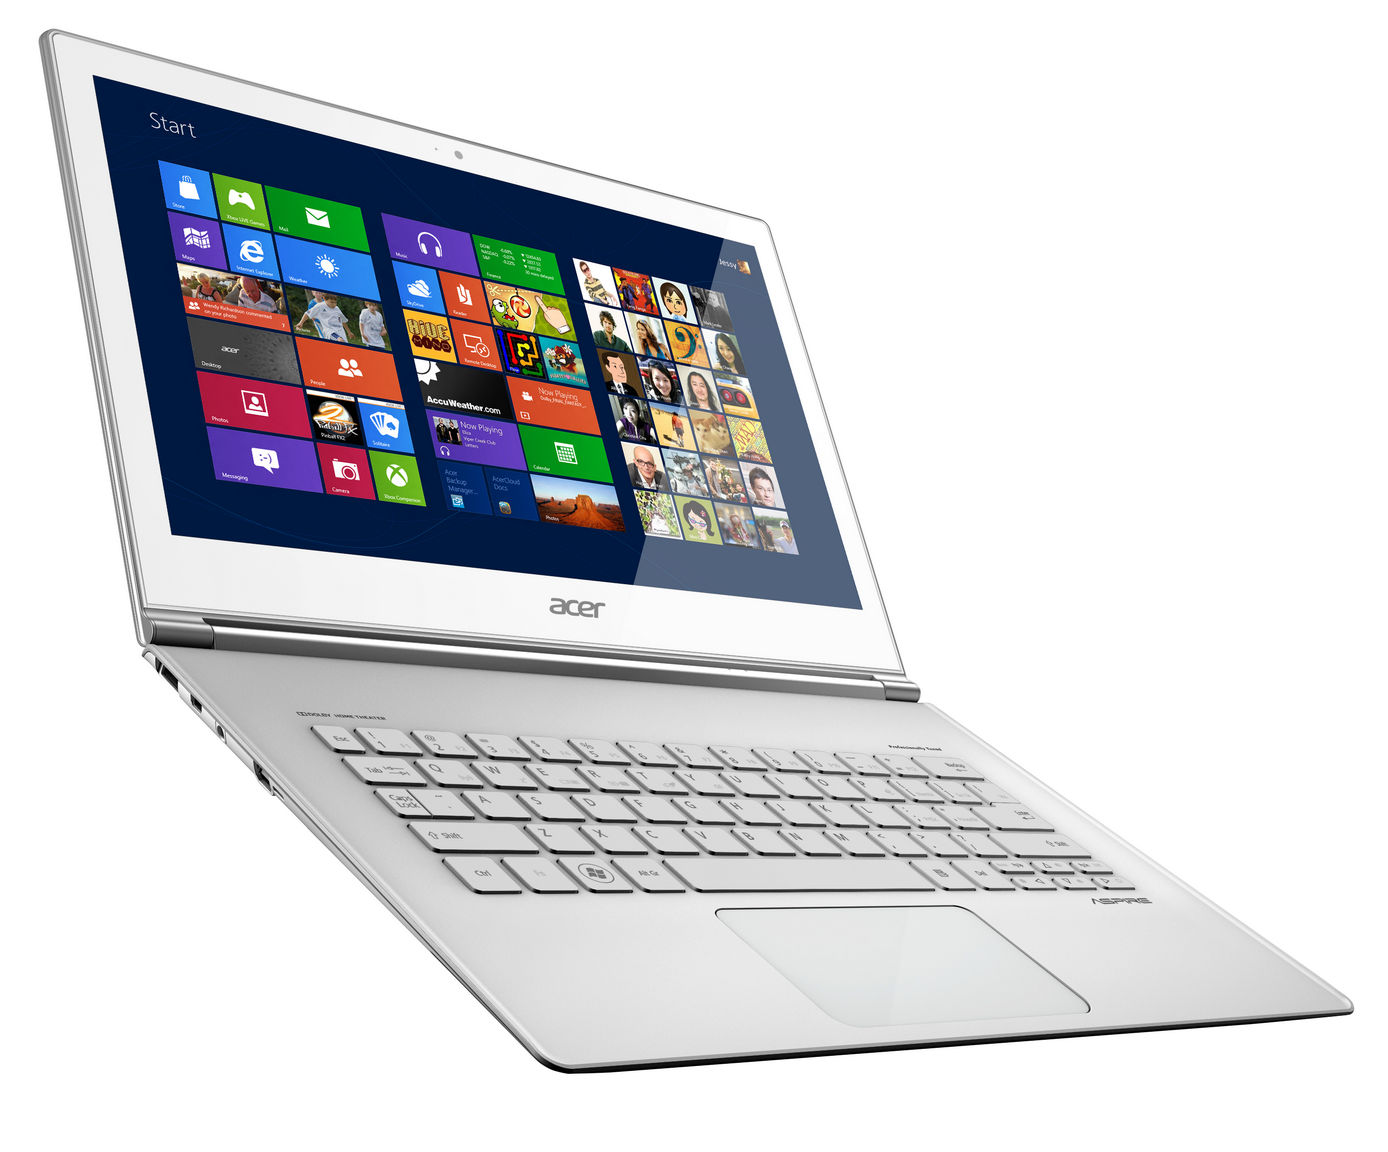 Acer zaprezentował sprzęt z Windows 8